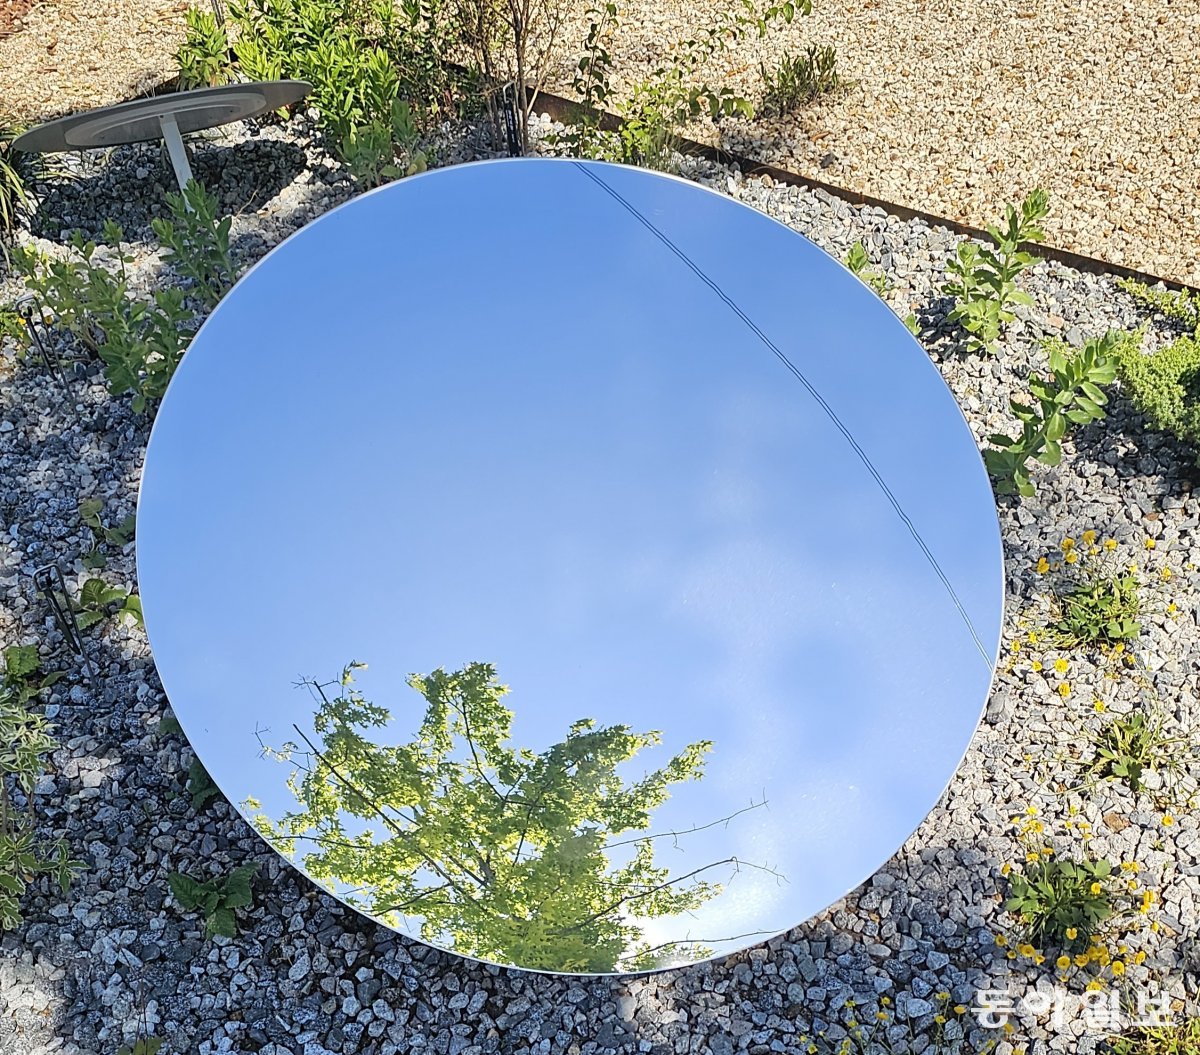 정원에 둔 동그란 거울을 통해 나무를 보는 경험은 행복감을 준다. 김선미 기자 kimsunmi@donga.com